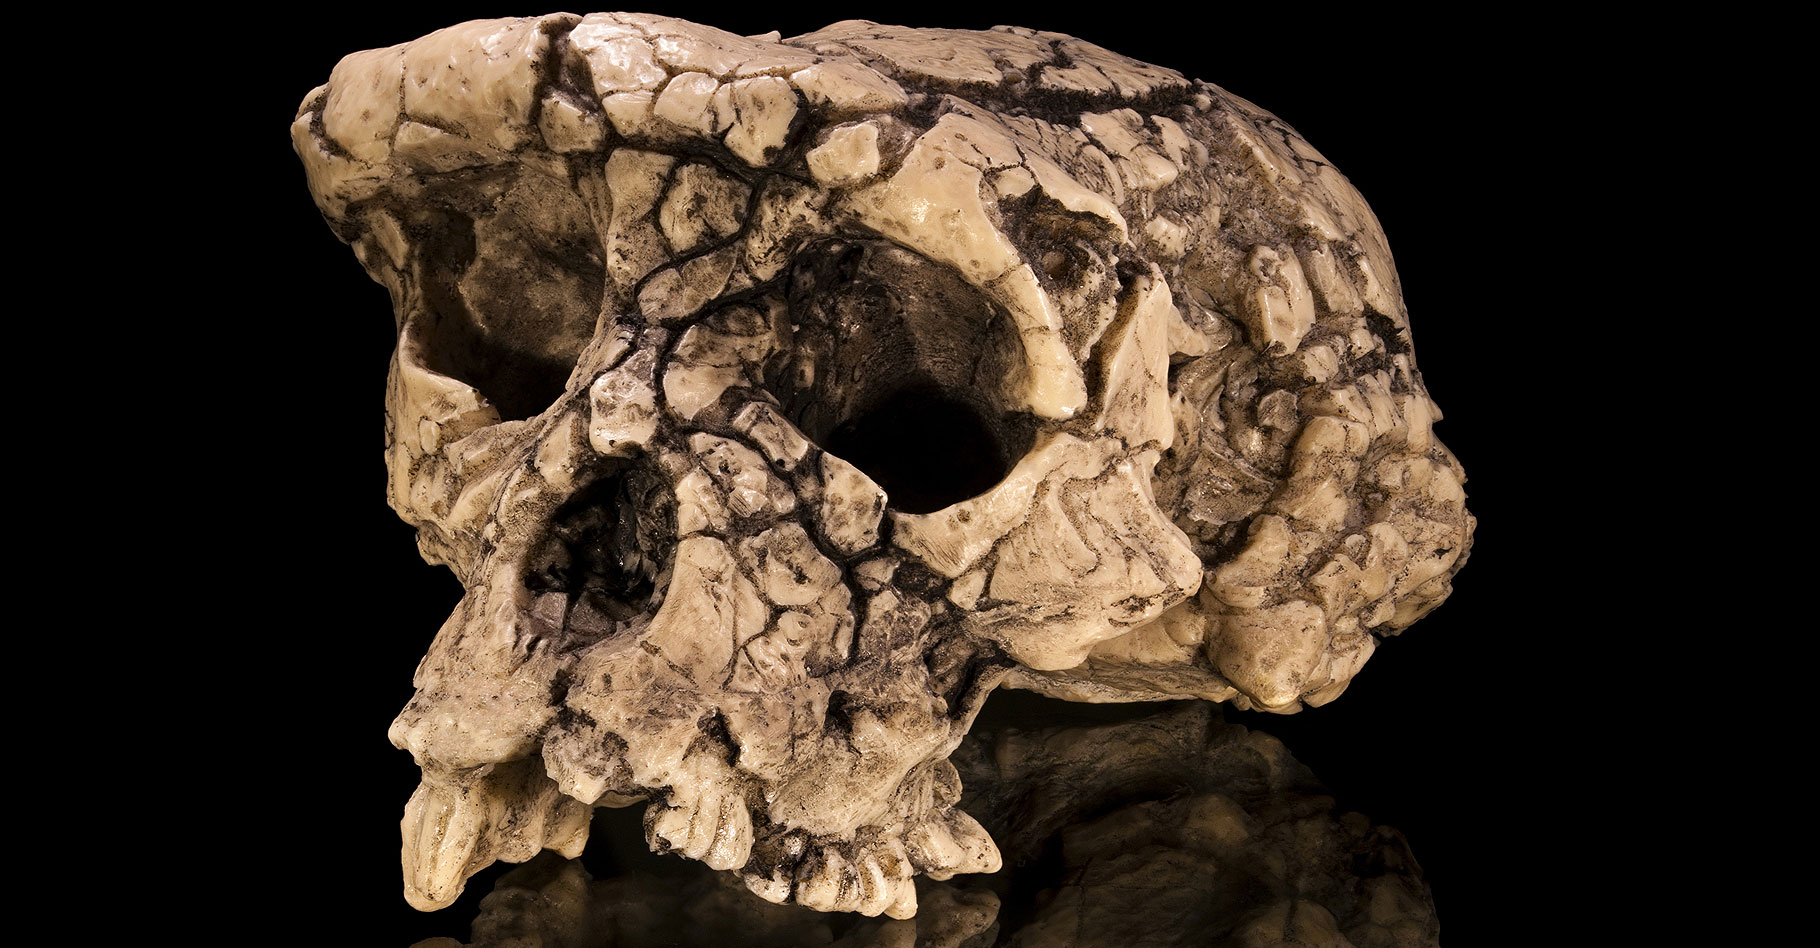 Moulage du crâne holotype de Sahelanthropus tchadensis, surnommé Toumaï, en vue facio-latérale. © Didier Descouens, CC BY-SA 4.0